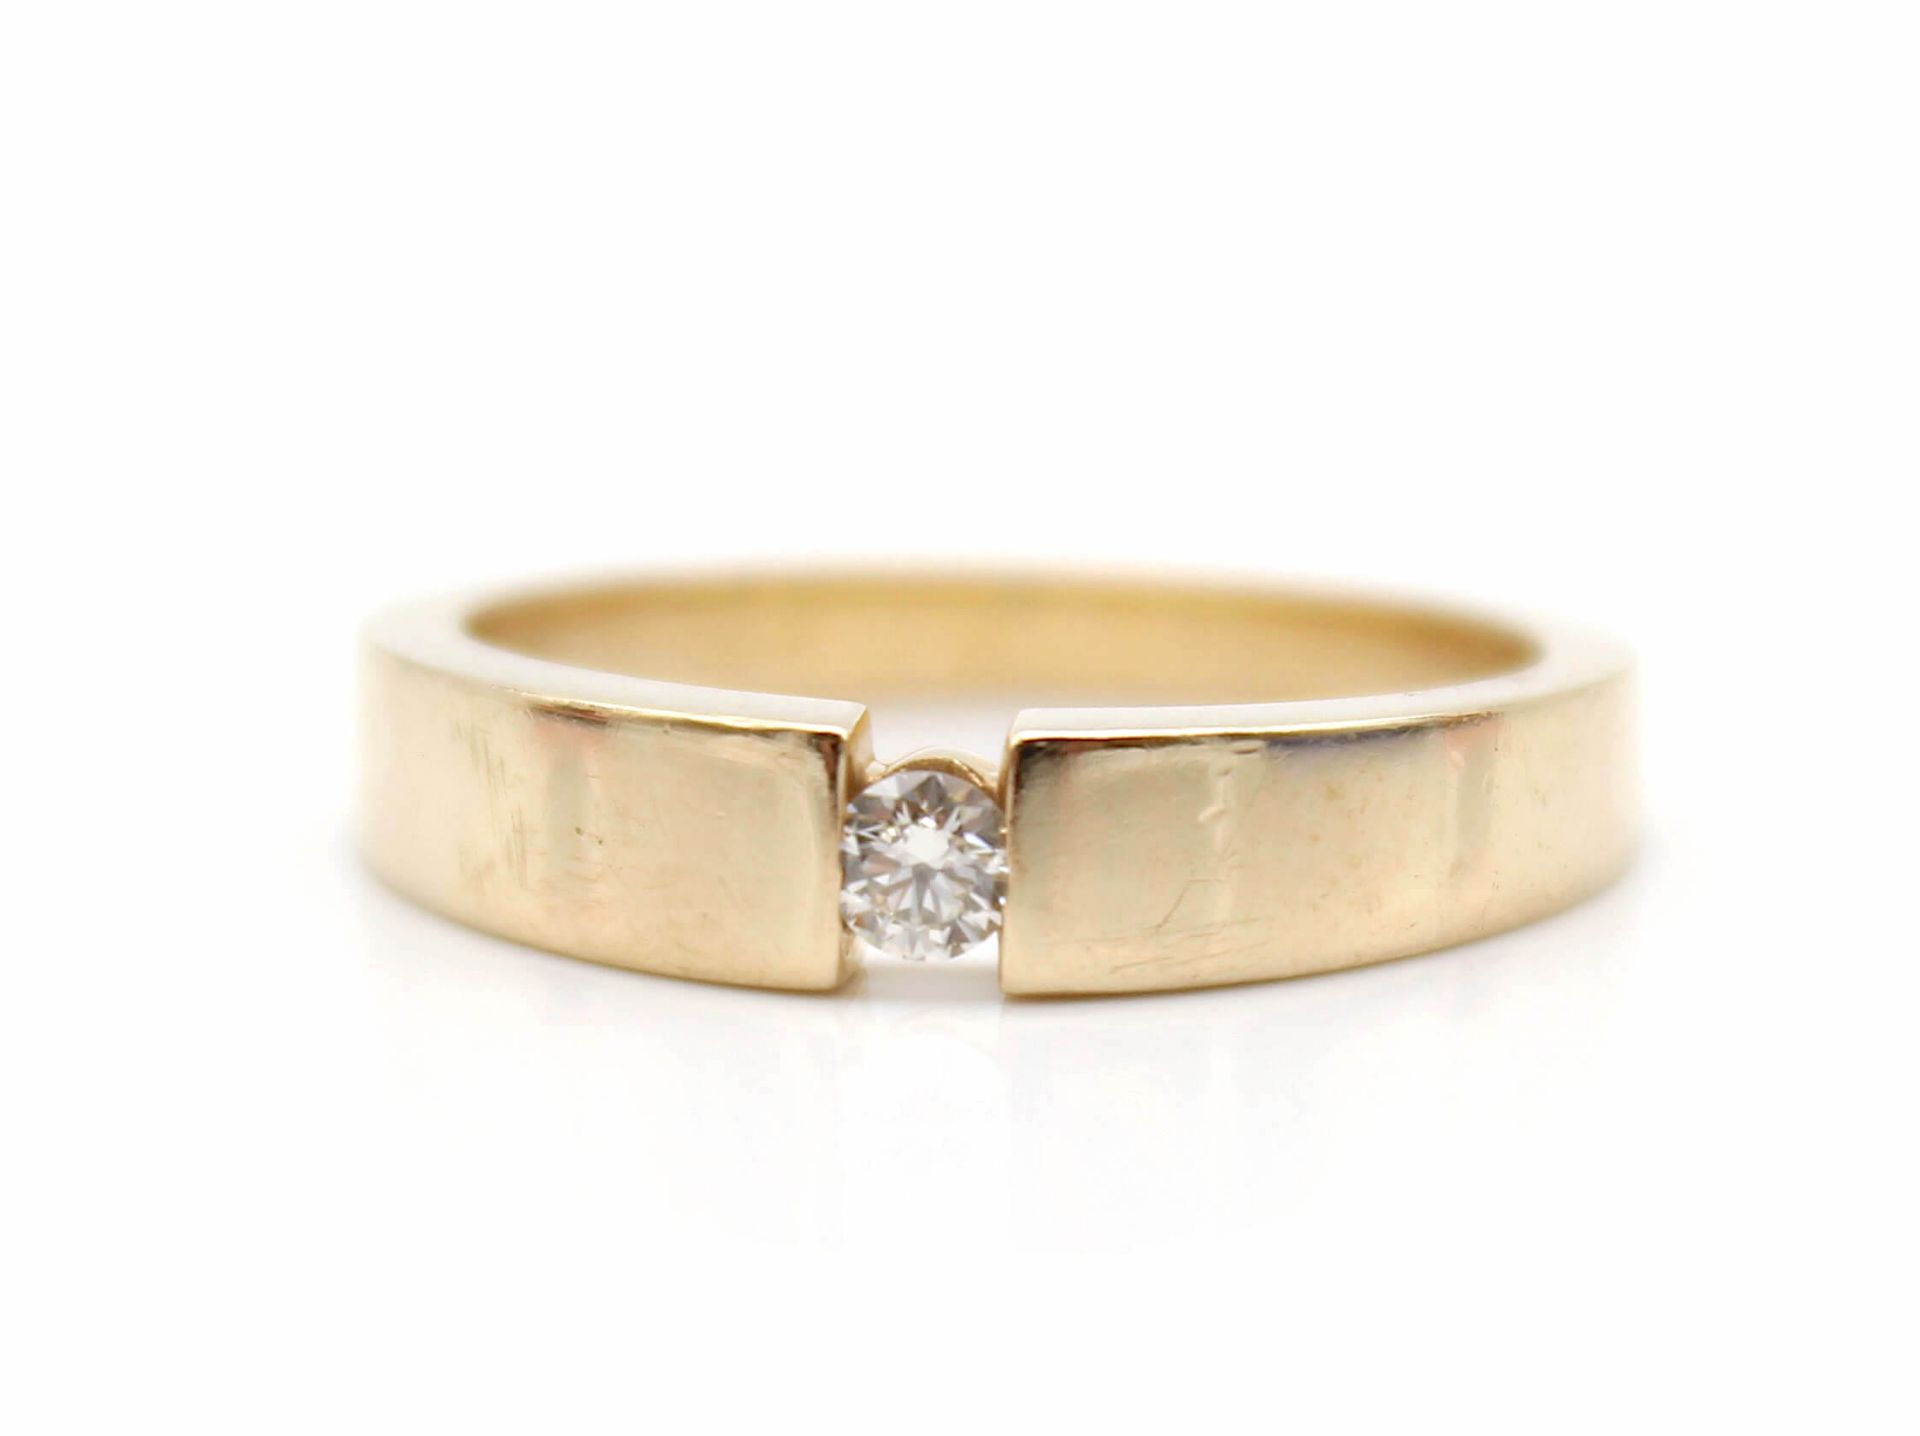 Ring aus 585er Gold mit einem Brillanten, ca. 0,10 ct, VVS, Farbe K-L. Gewicht: 4,7 g, Größe: 56 - Image 2 of 2